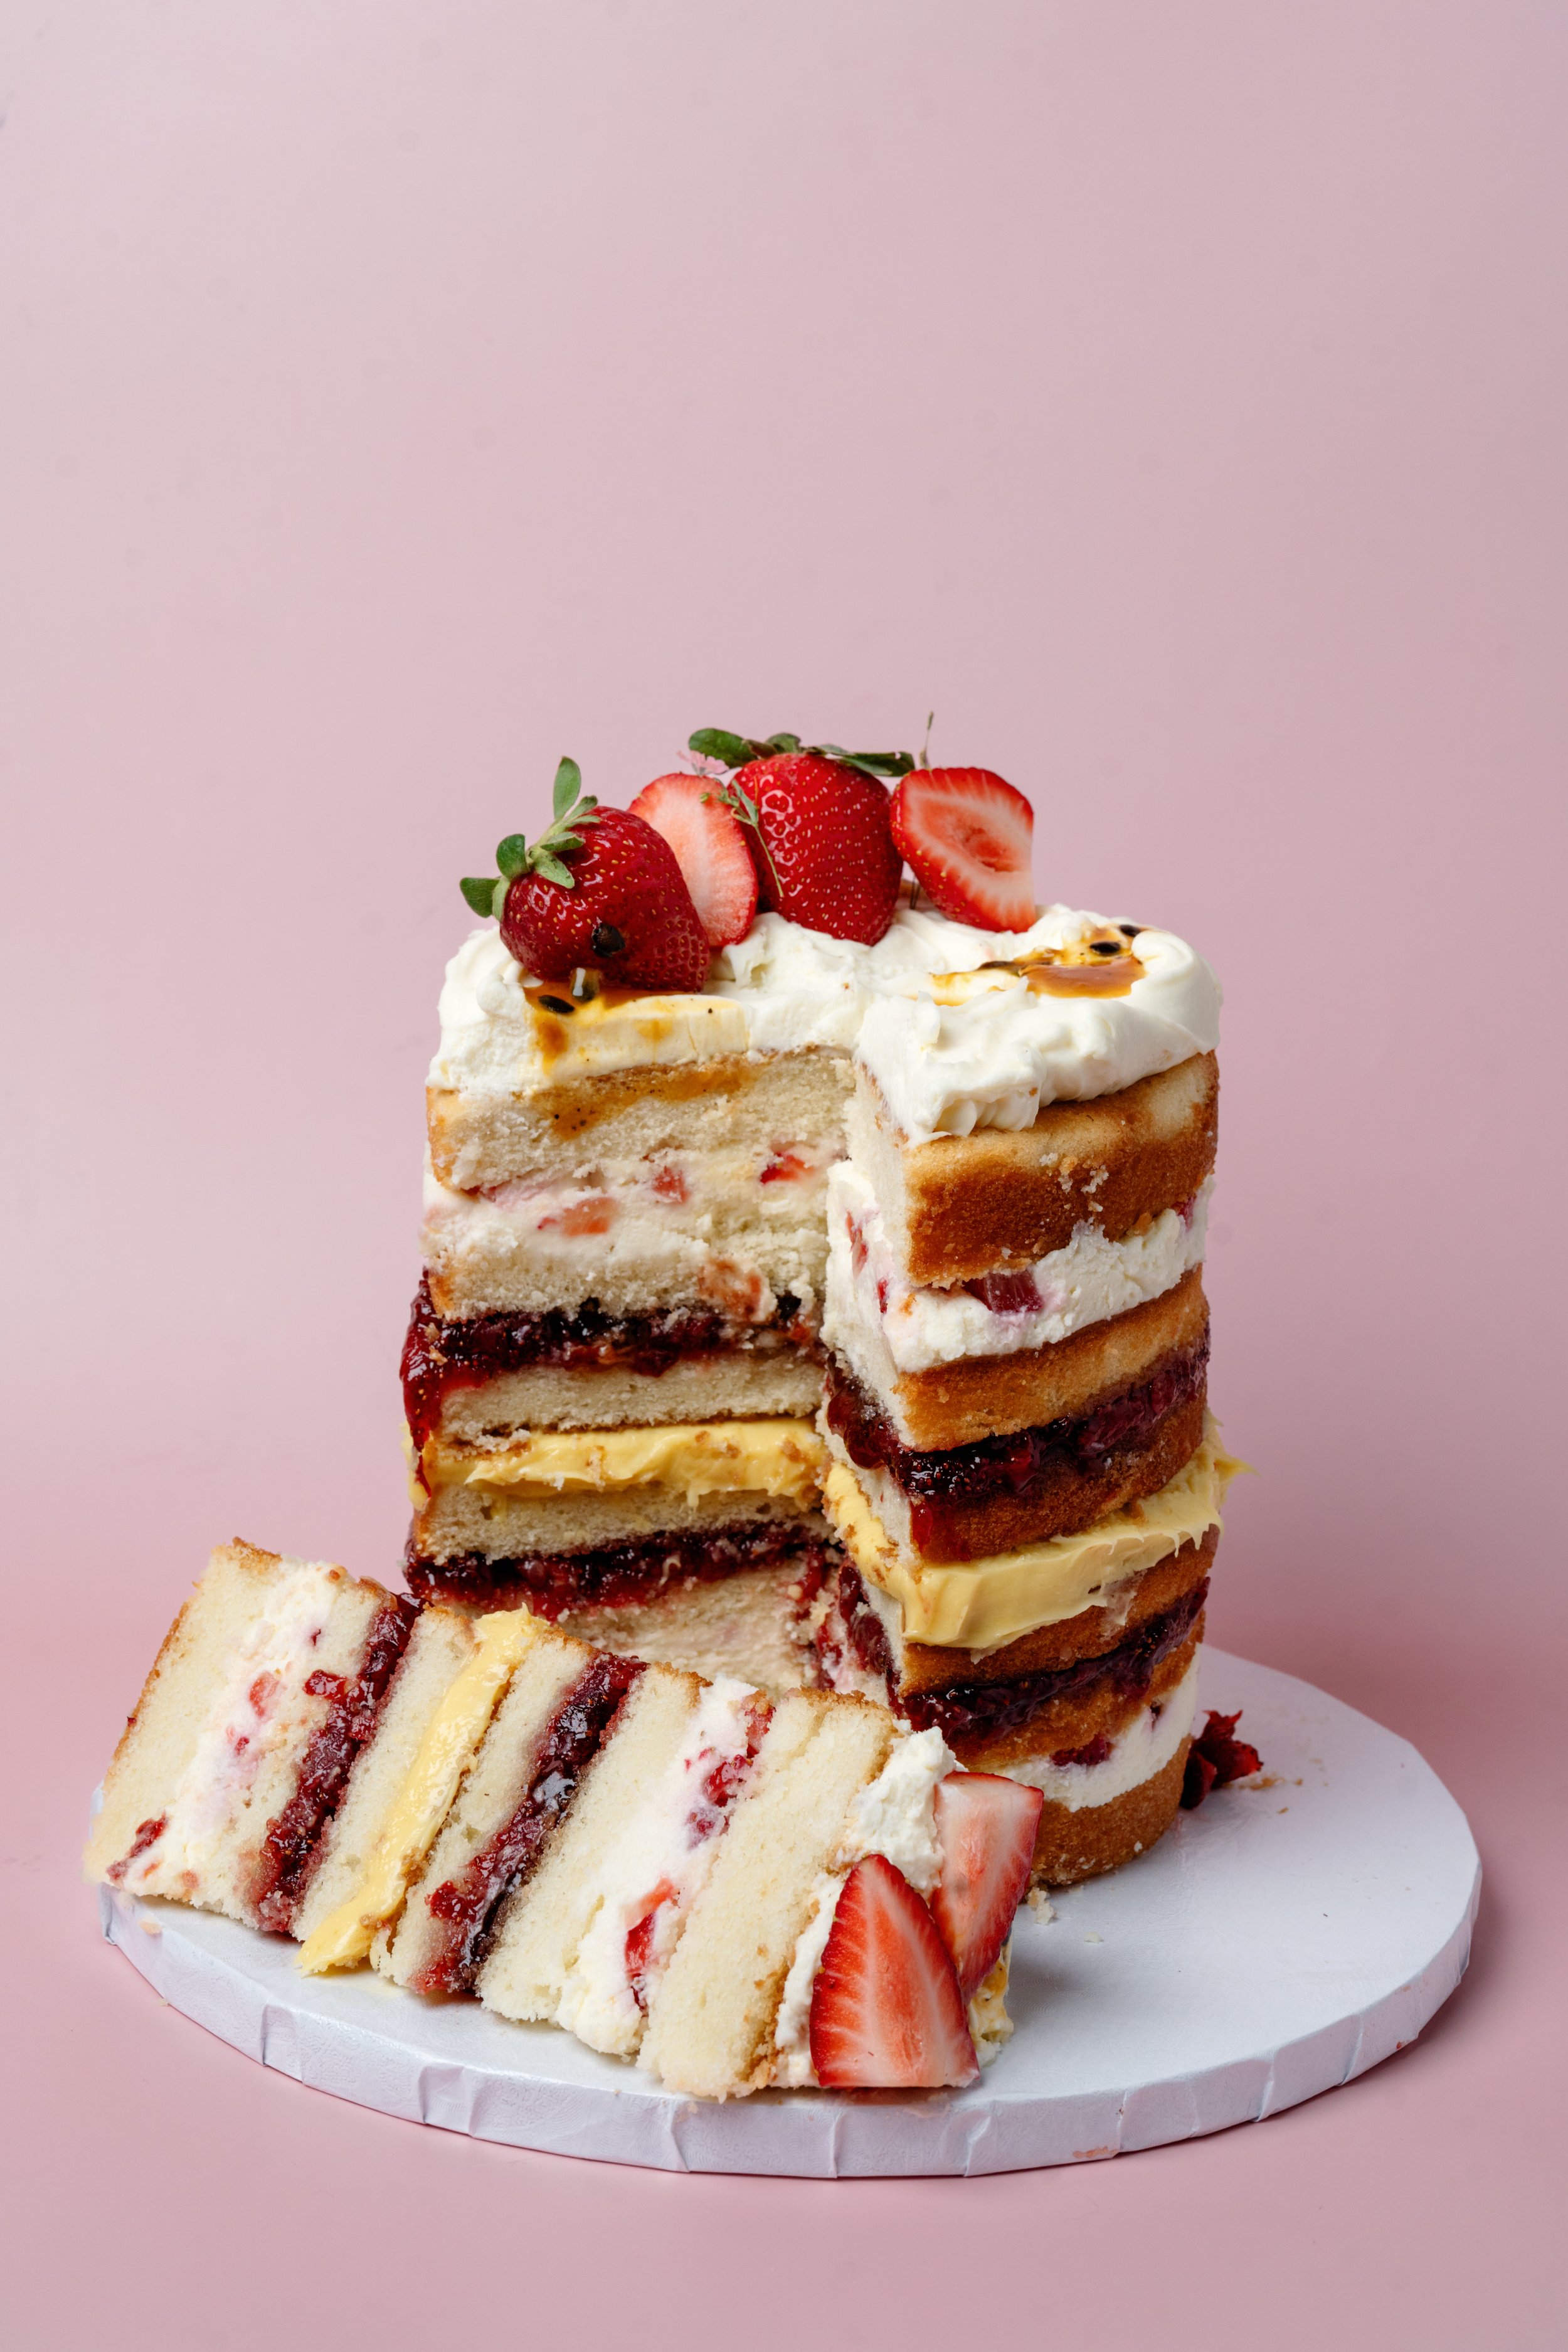 ECBG Cake Studio Custom Chicago Bakery Cakes Passionate for Strawberries 4.jpg